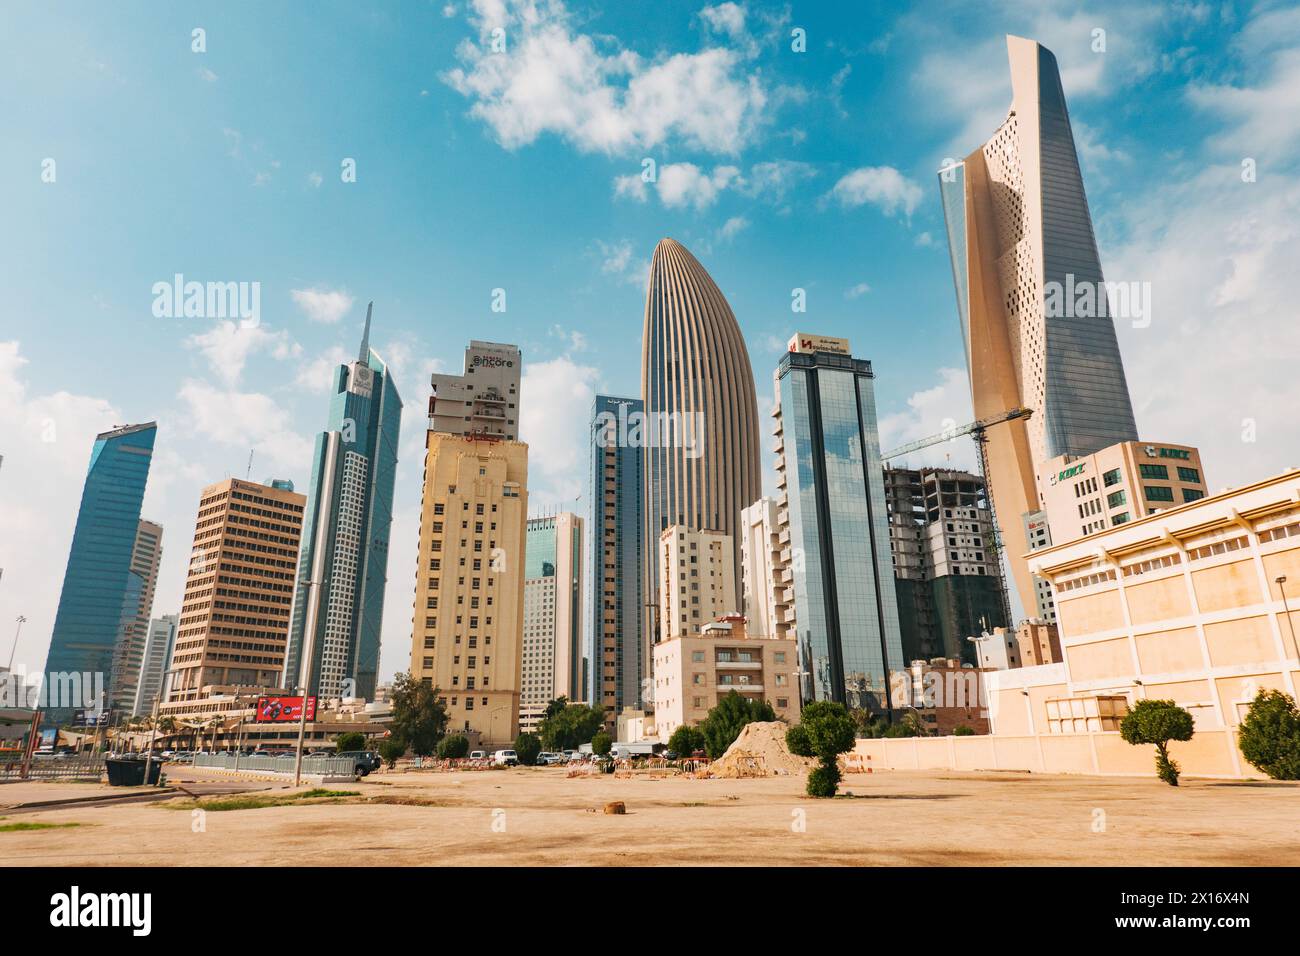 Grattacieli nel quartiere finanziario di Kuwait City, in particolare la Torre al Hamra (la più alta) e la Torre NBK (a forma ovale) Foto Stock